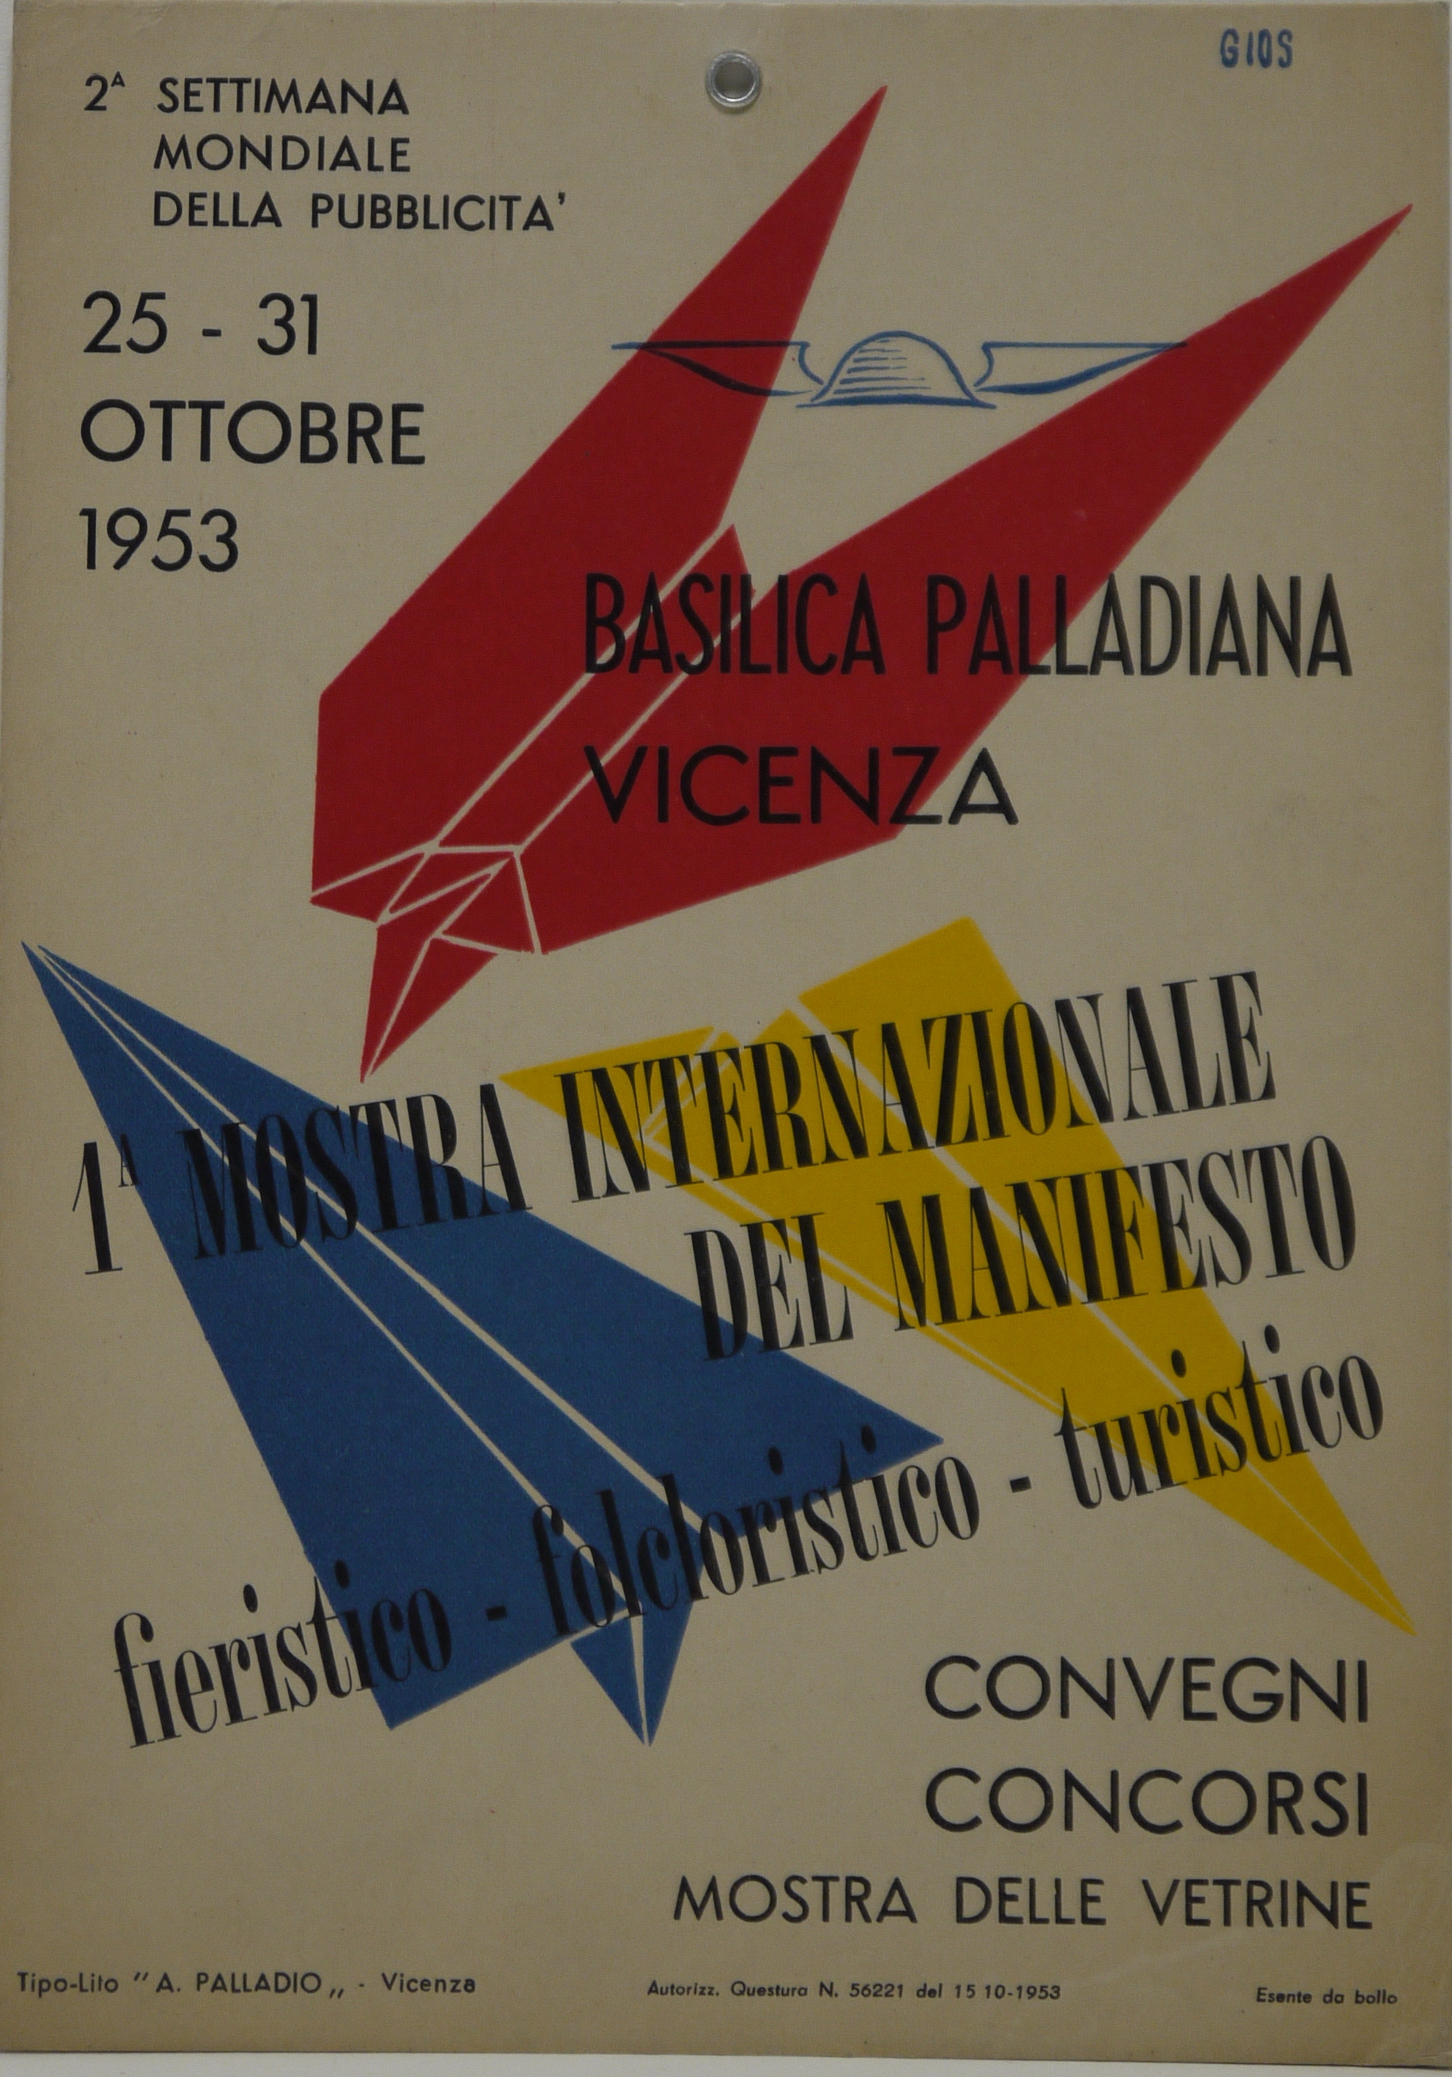 Prima mostra internazionale del manifesto, aereoplanini di carta blu, rosso e giallo e petaso alato (locandina) - ambito vicentino (metà XX)